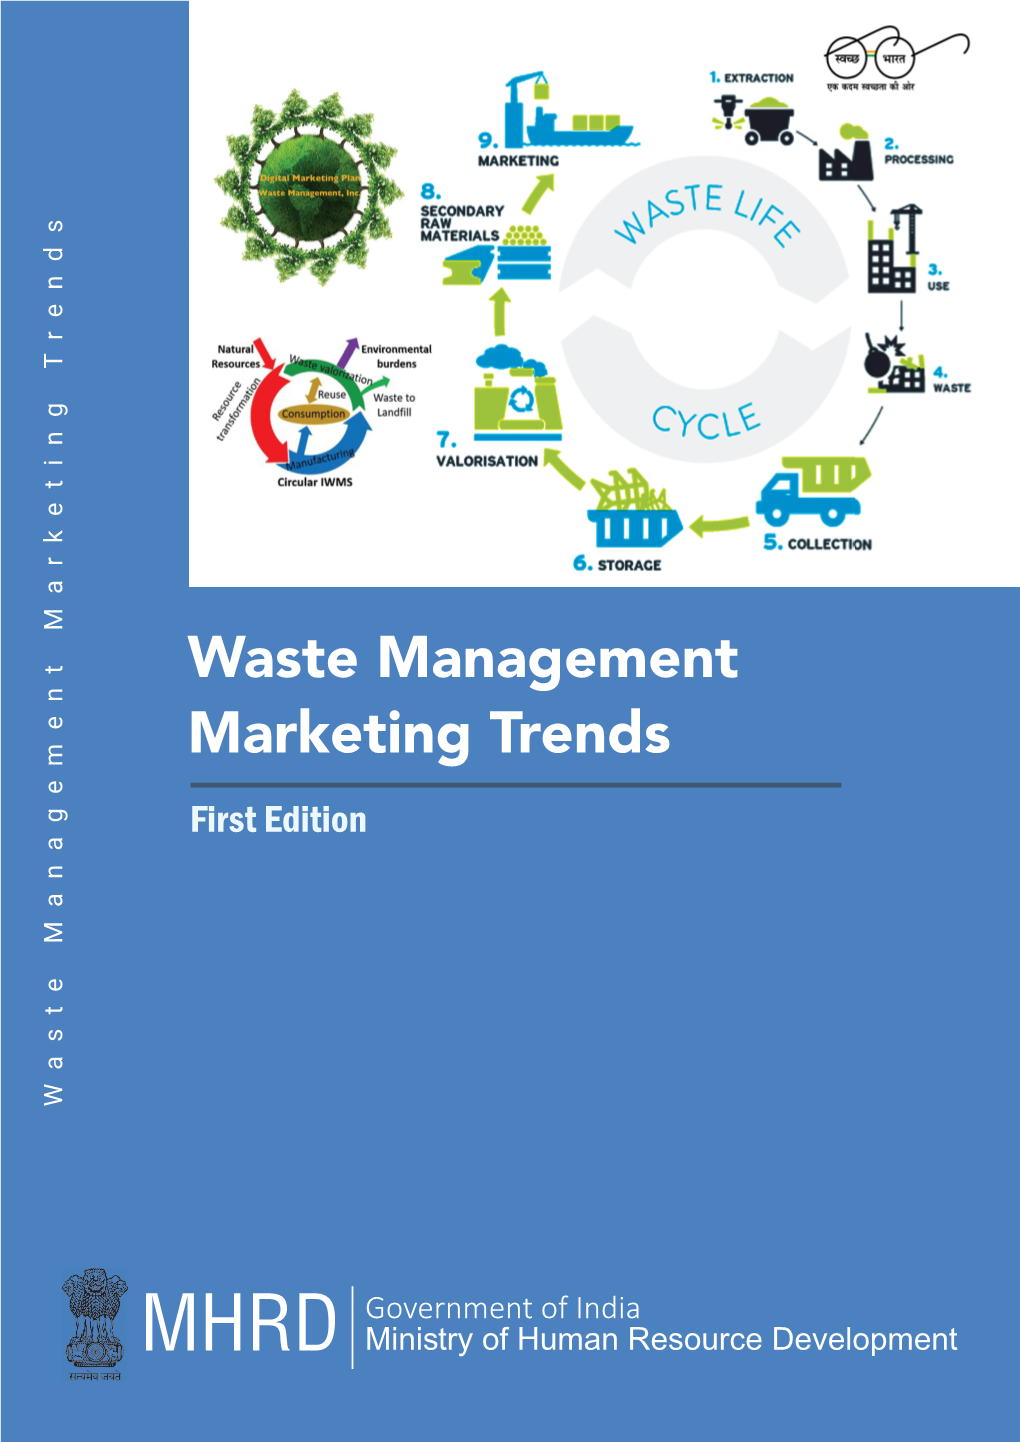 Waste Management Marketing Trends First Edition Waste Management Marketing Trends Management Marketing Waste